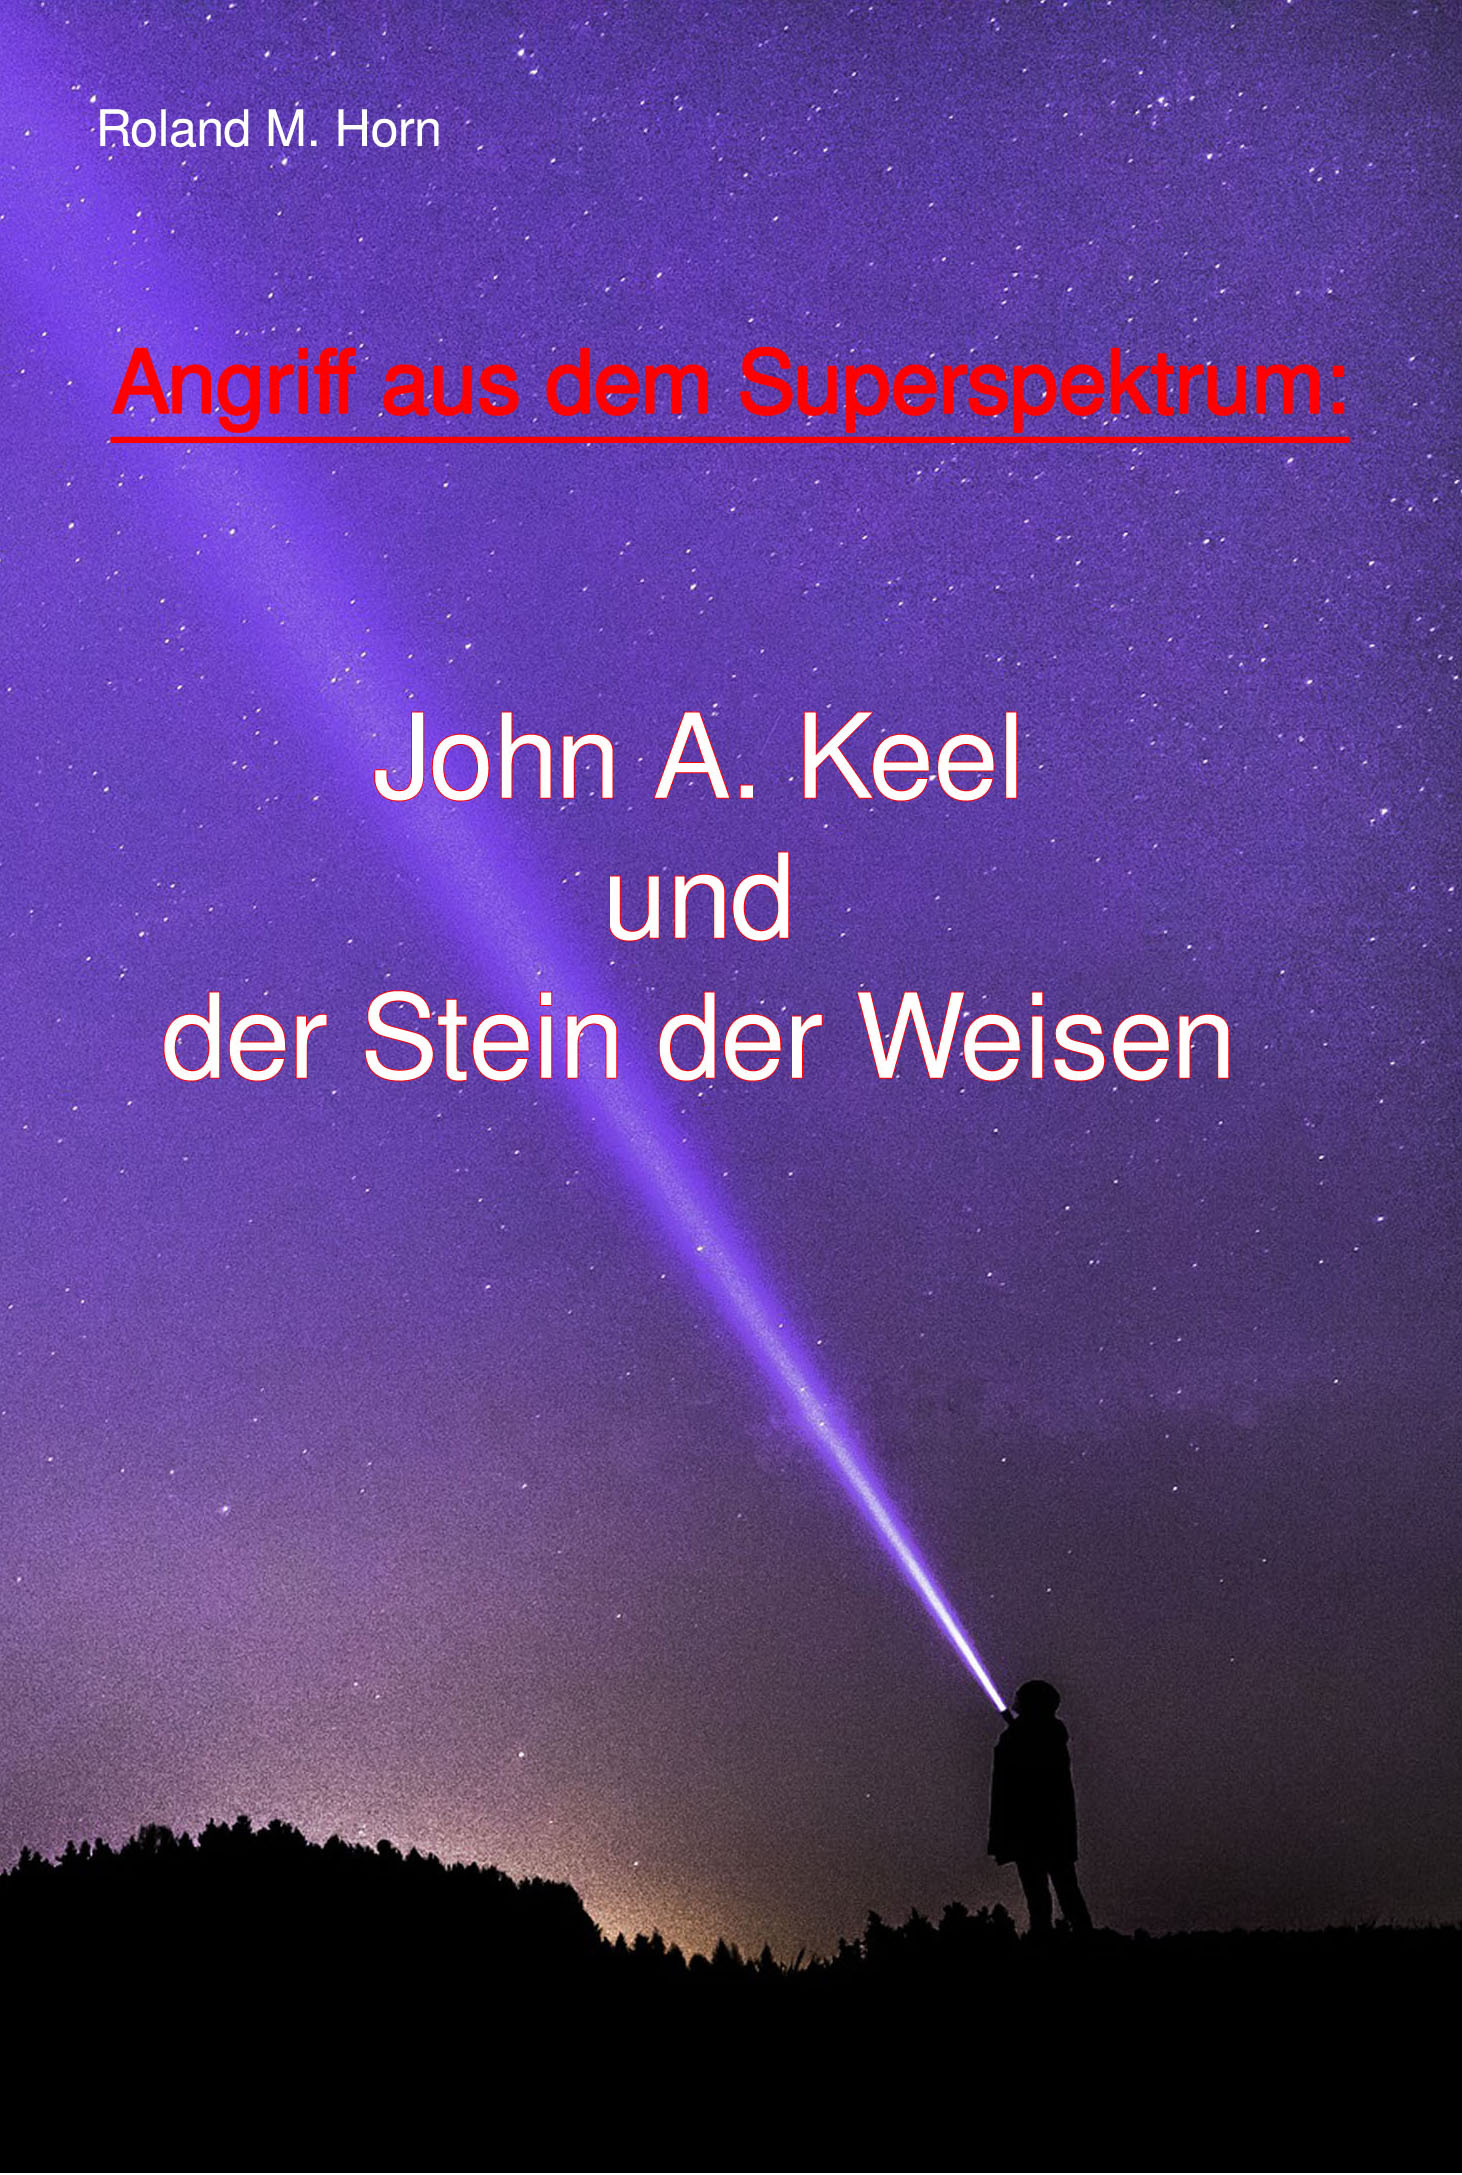 Roland M. Horn: Angriff aus dem Superspektrum: John A. Keel und der Stein der Weisen